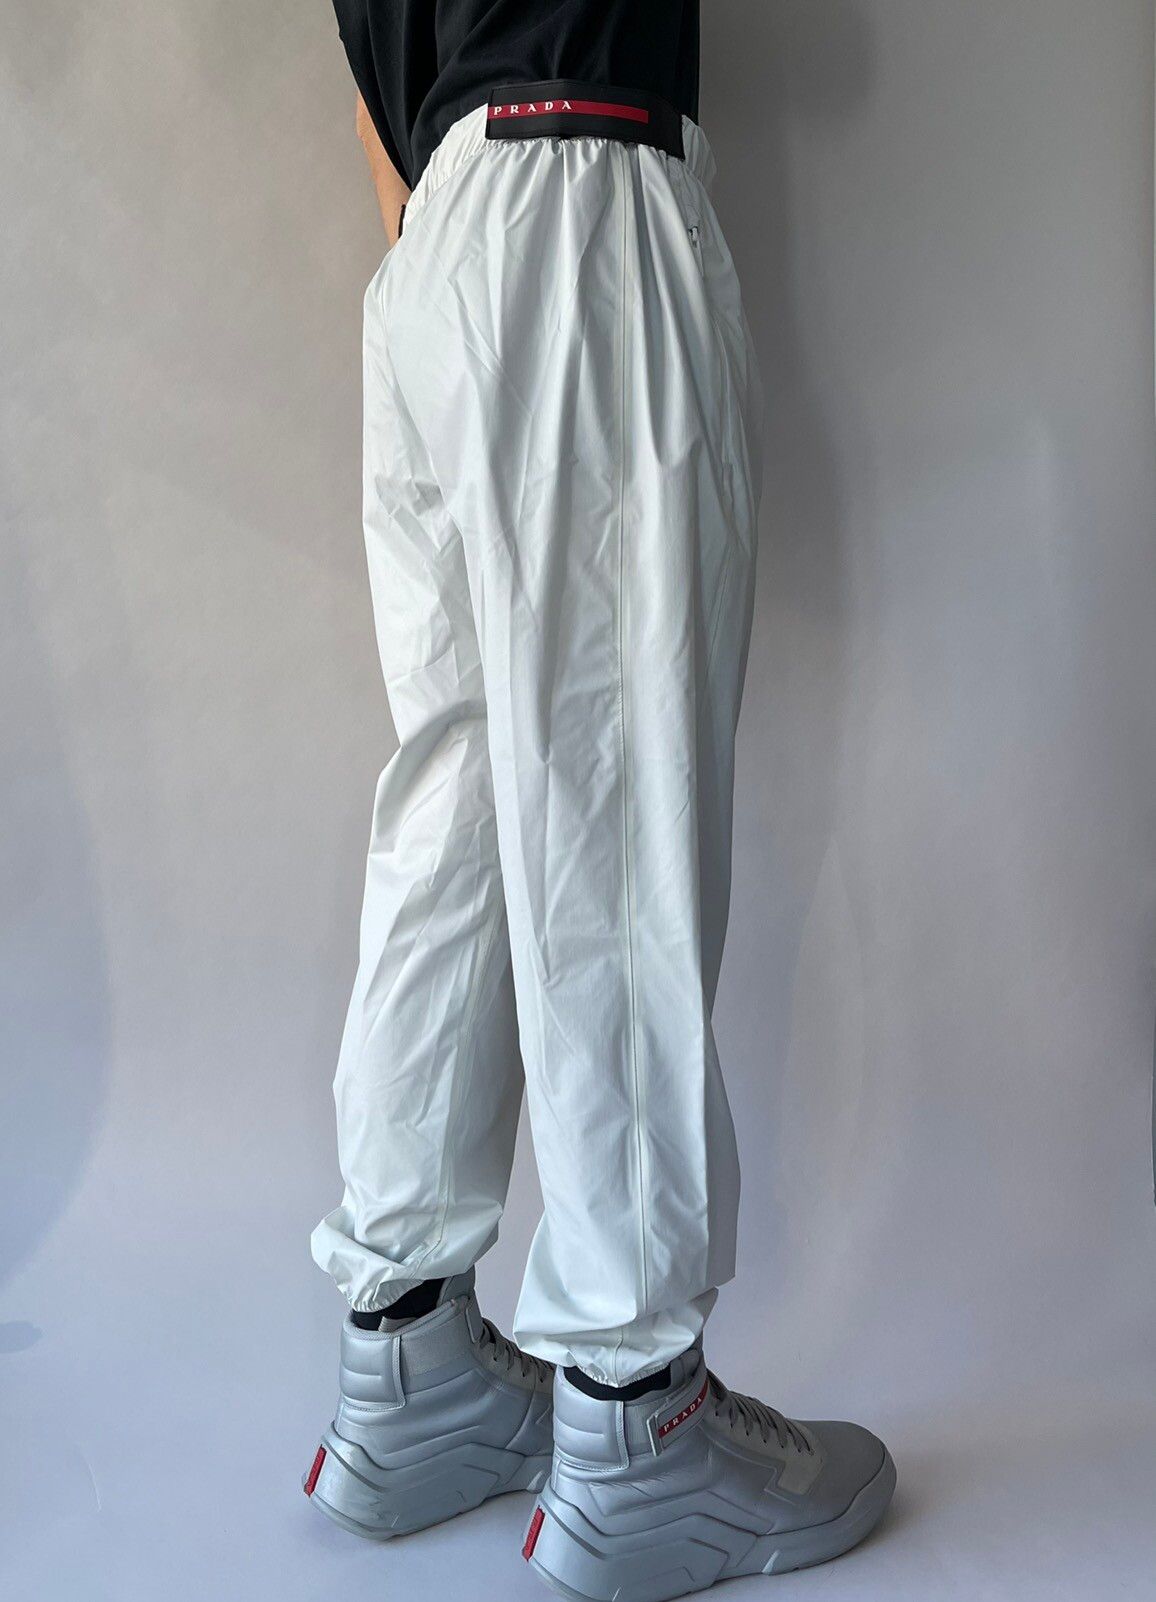 Prada Light Nylon wide-leg pants Size US 32 / EU 48 - 2 Preview